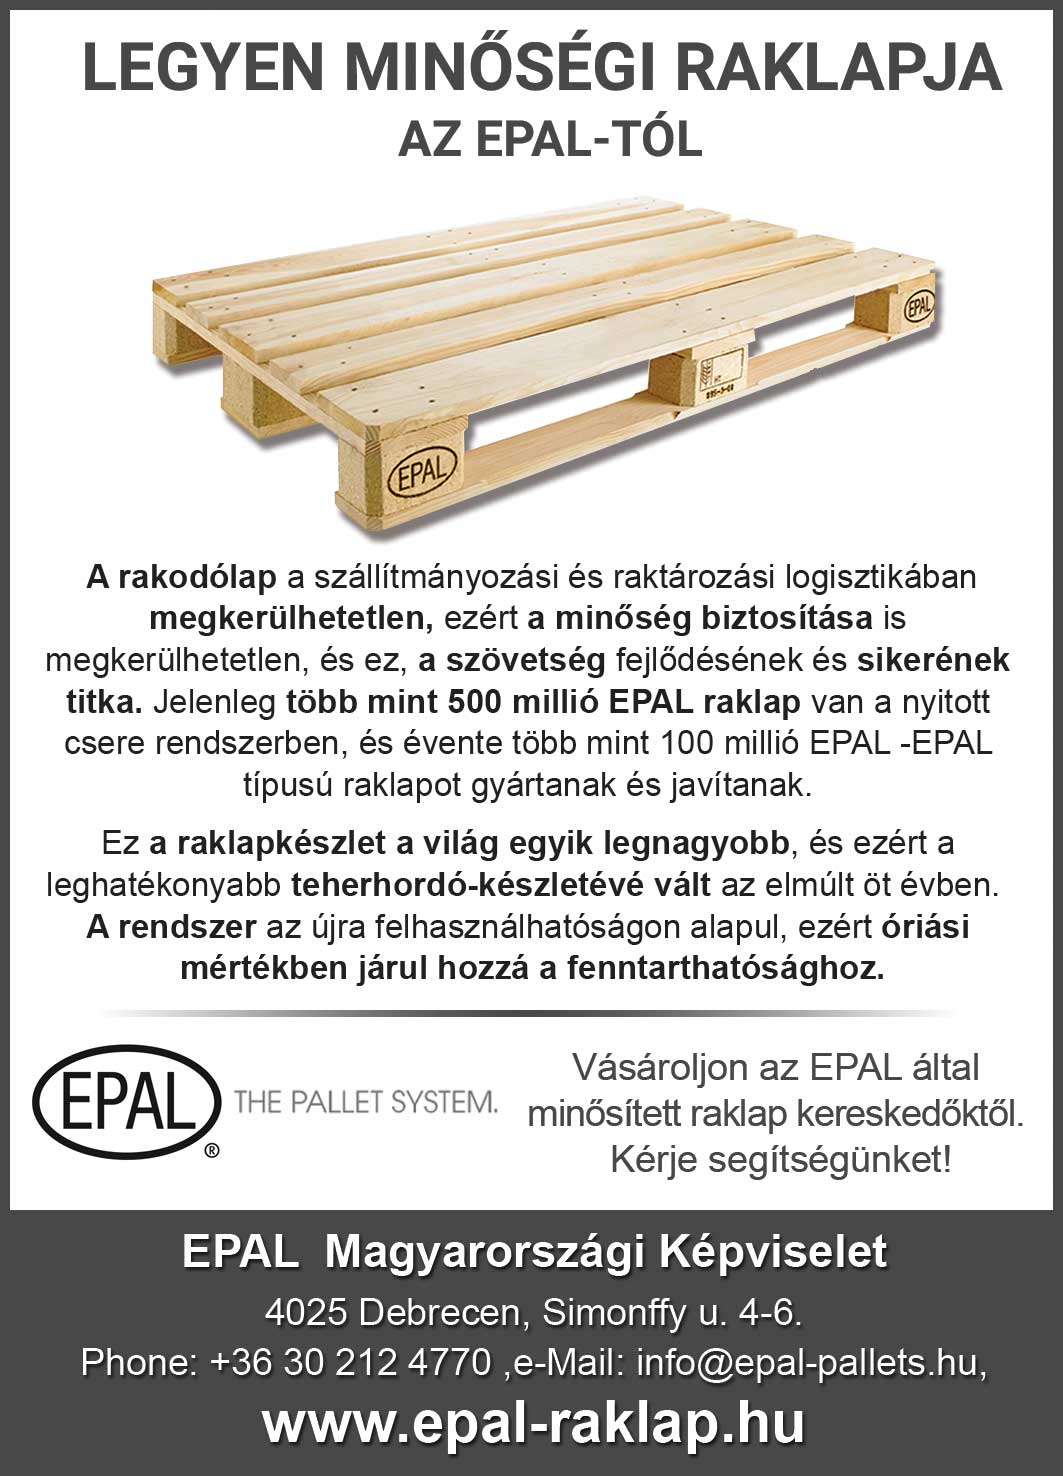 Paletta - Legyen minőségi raklapja az EPAL-tól